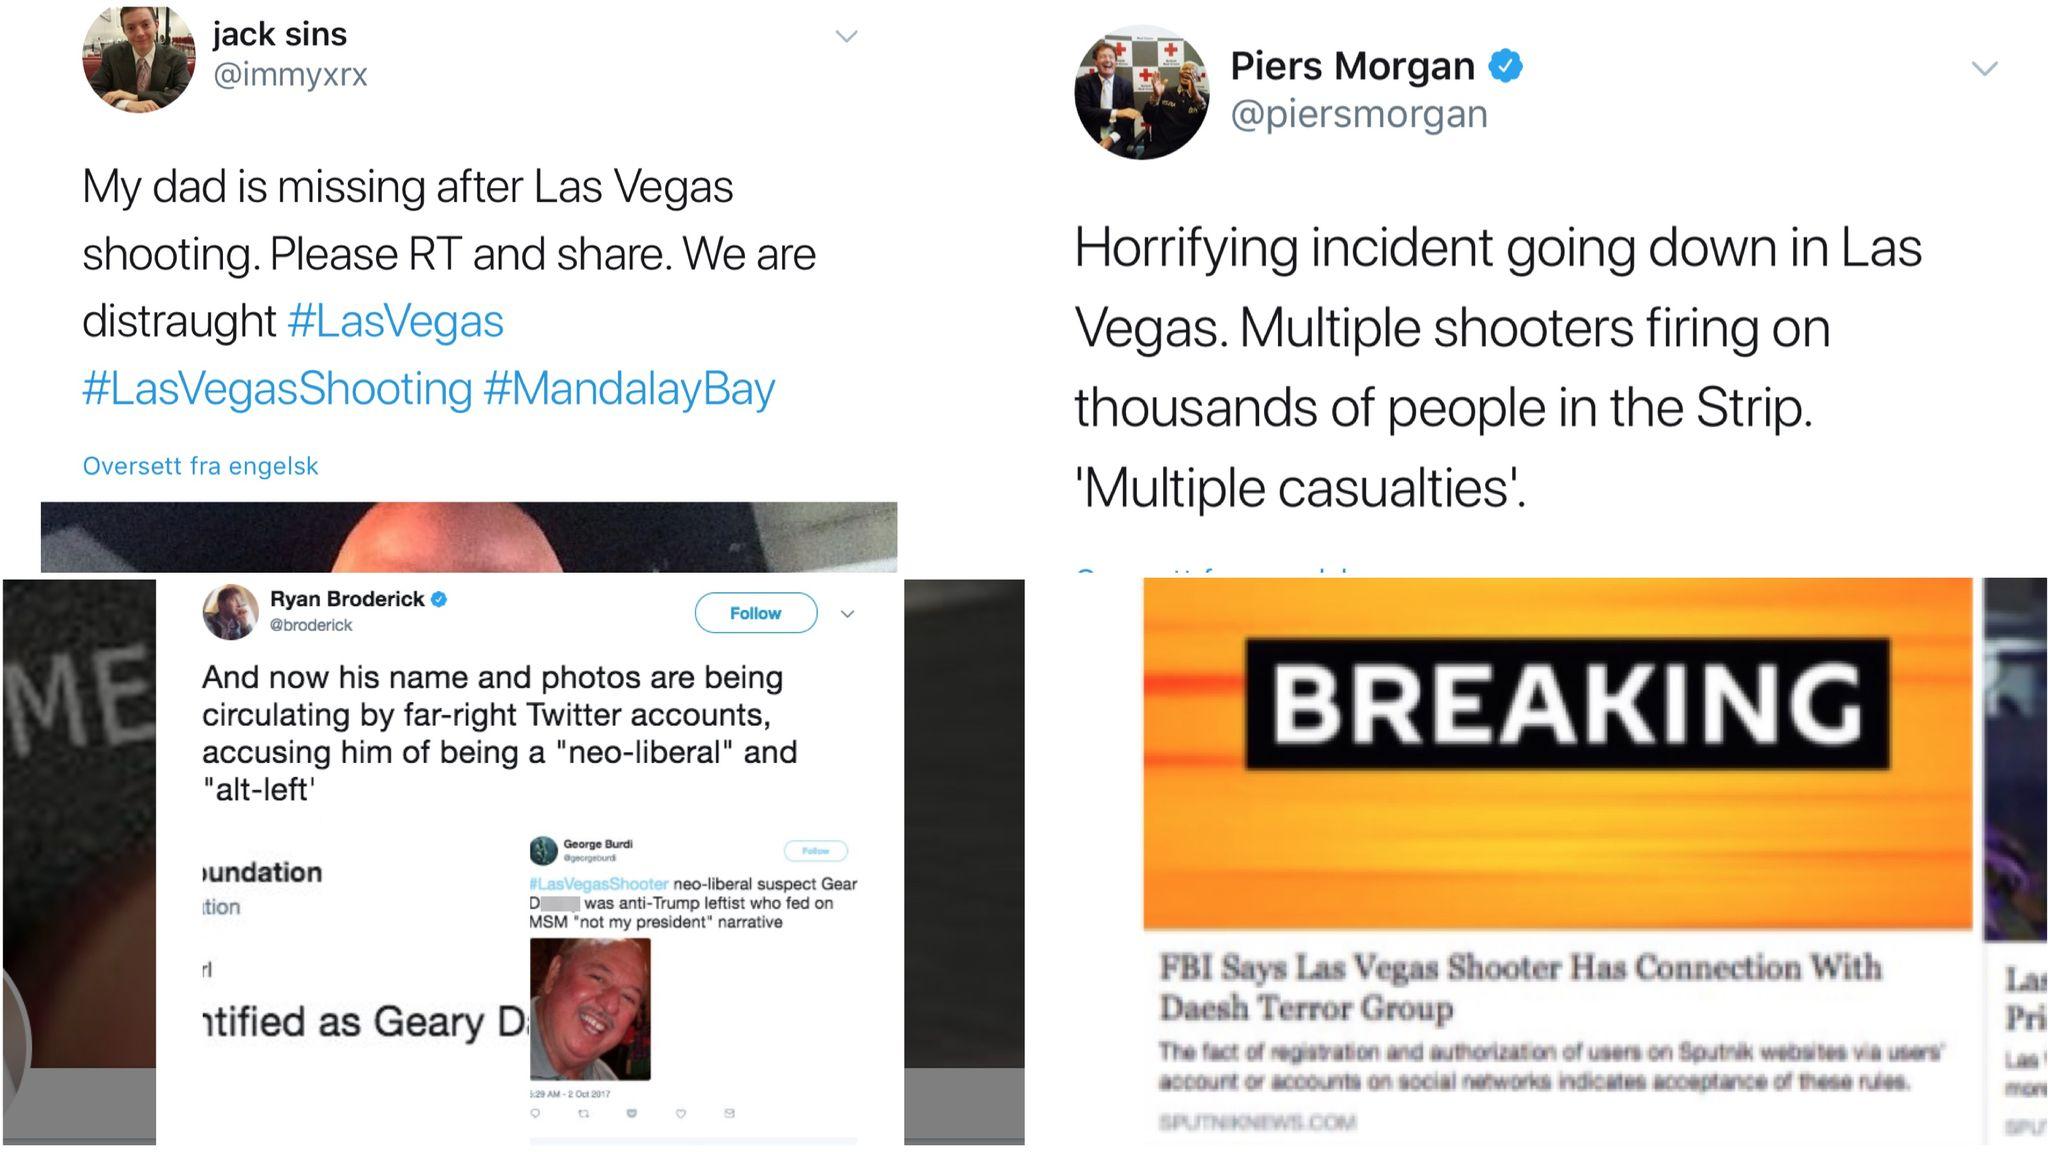 Større eller løpende nyhetshendelser, som masseskytingen i Las Vegas, gjør det ekstra utfordrende å skille god fra dårlig informasjon. Aftenposten fortalte hvordan både kjente TV-personligheter og medier spredde falske nyheter. 